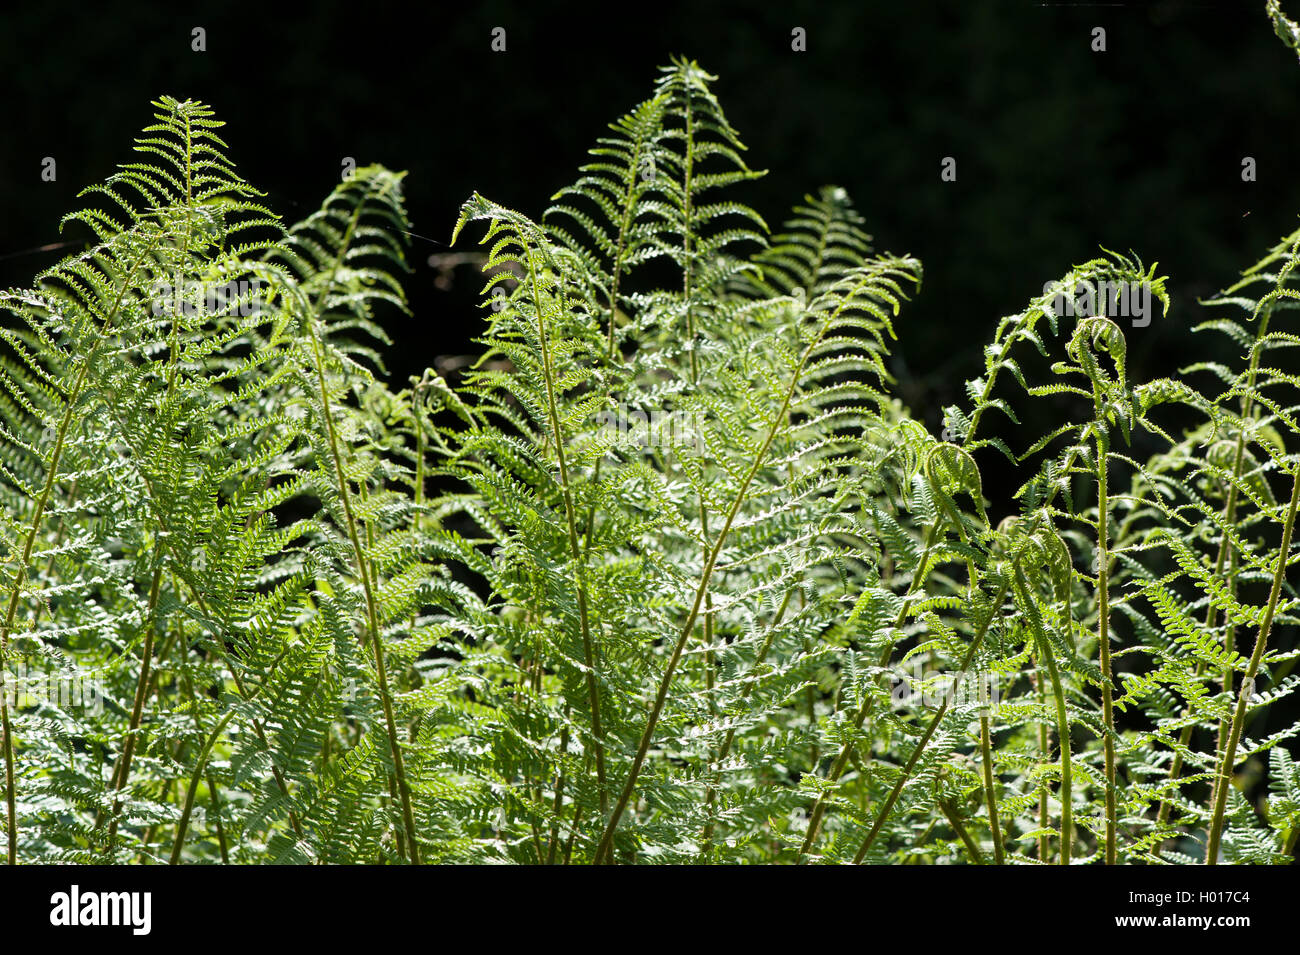 Lady fern, Common lady-fern (Athyrium filix-femina), fronds, Germany Stock Photo